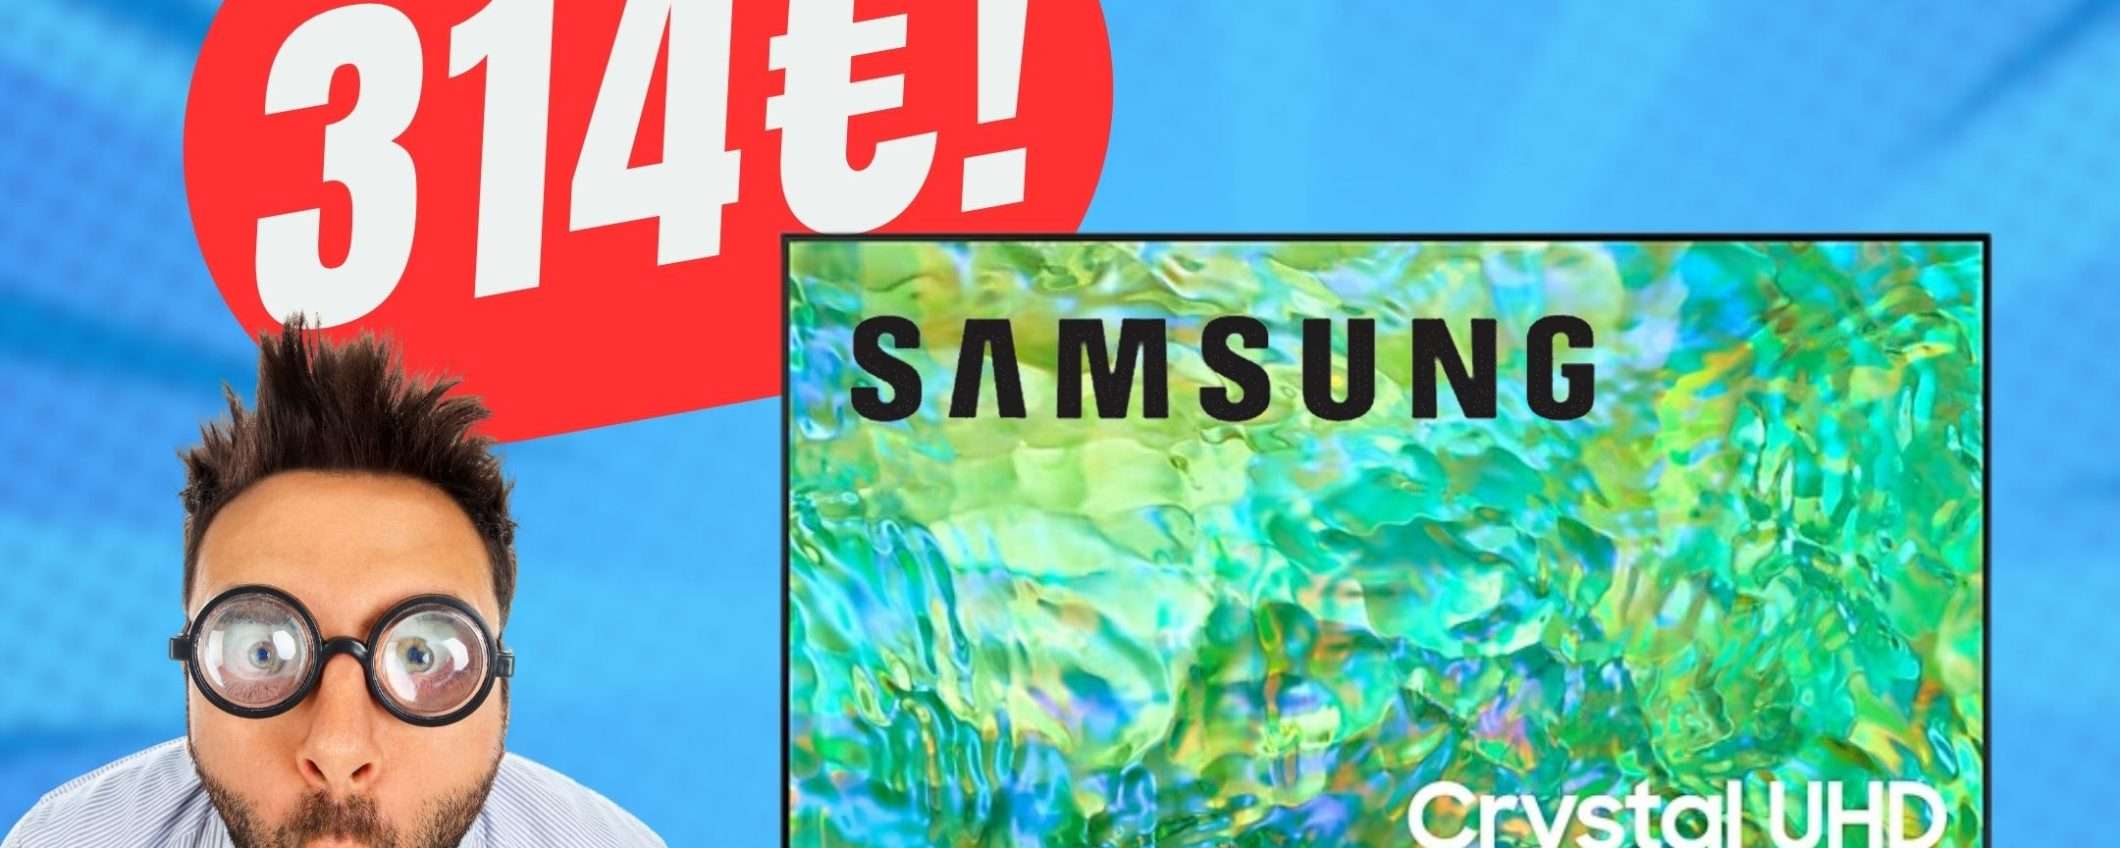 Lo Smart TV di SAMSUNG (4K) CROLLA a 314€ con questo COUPON